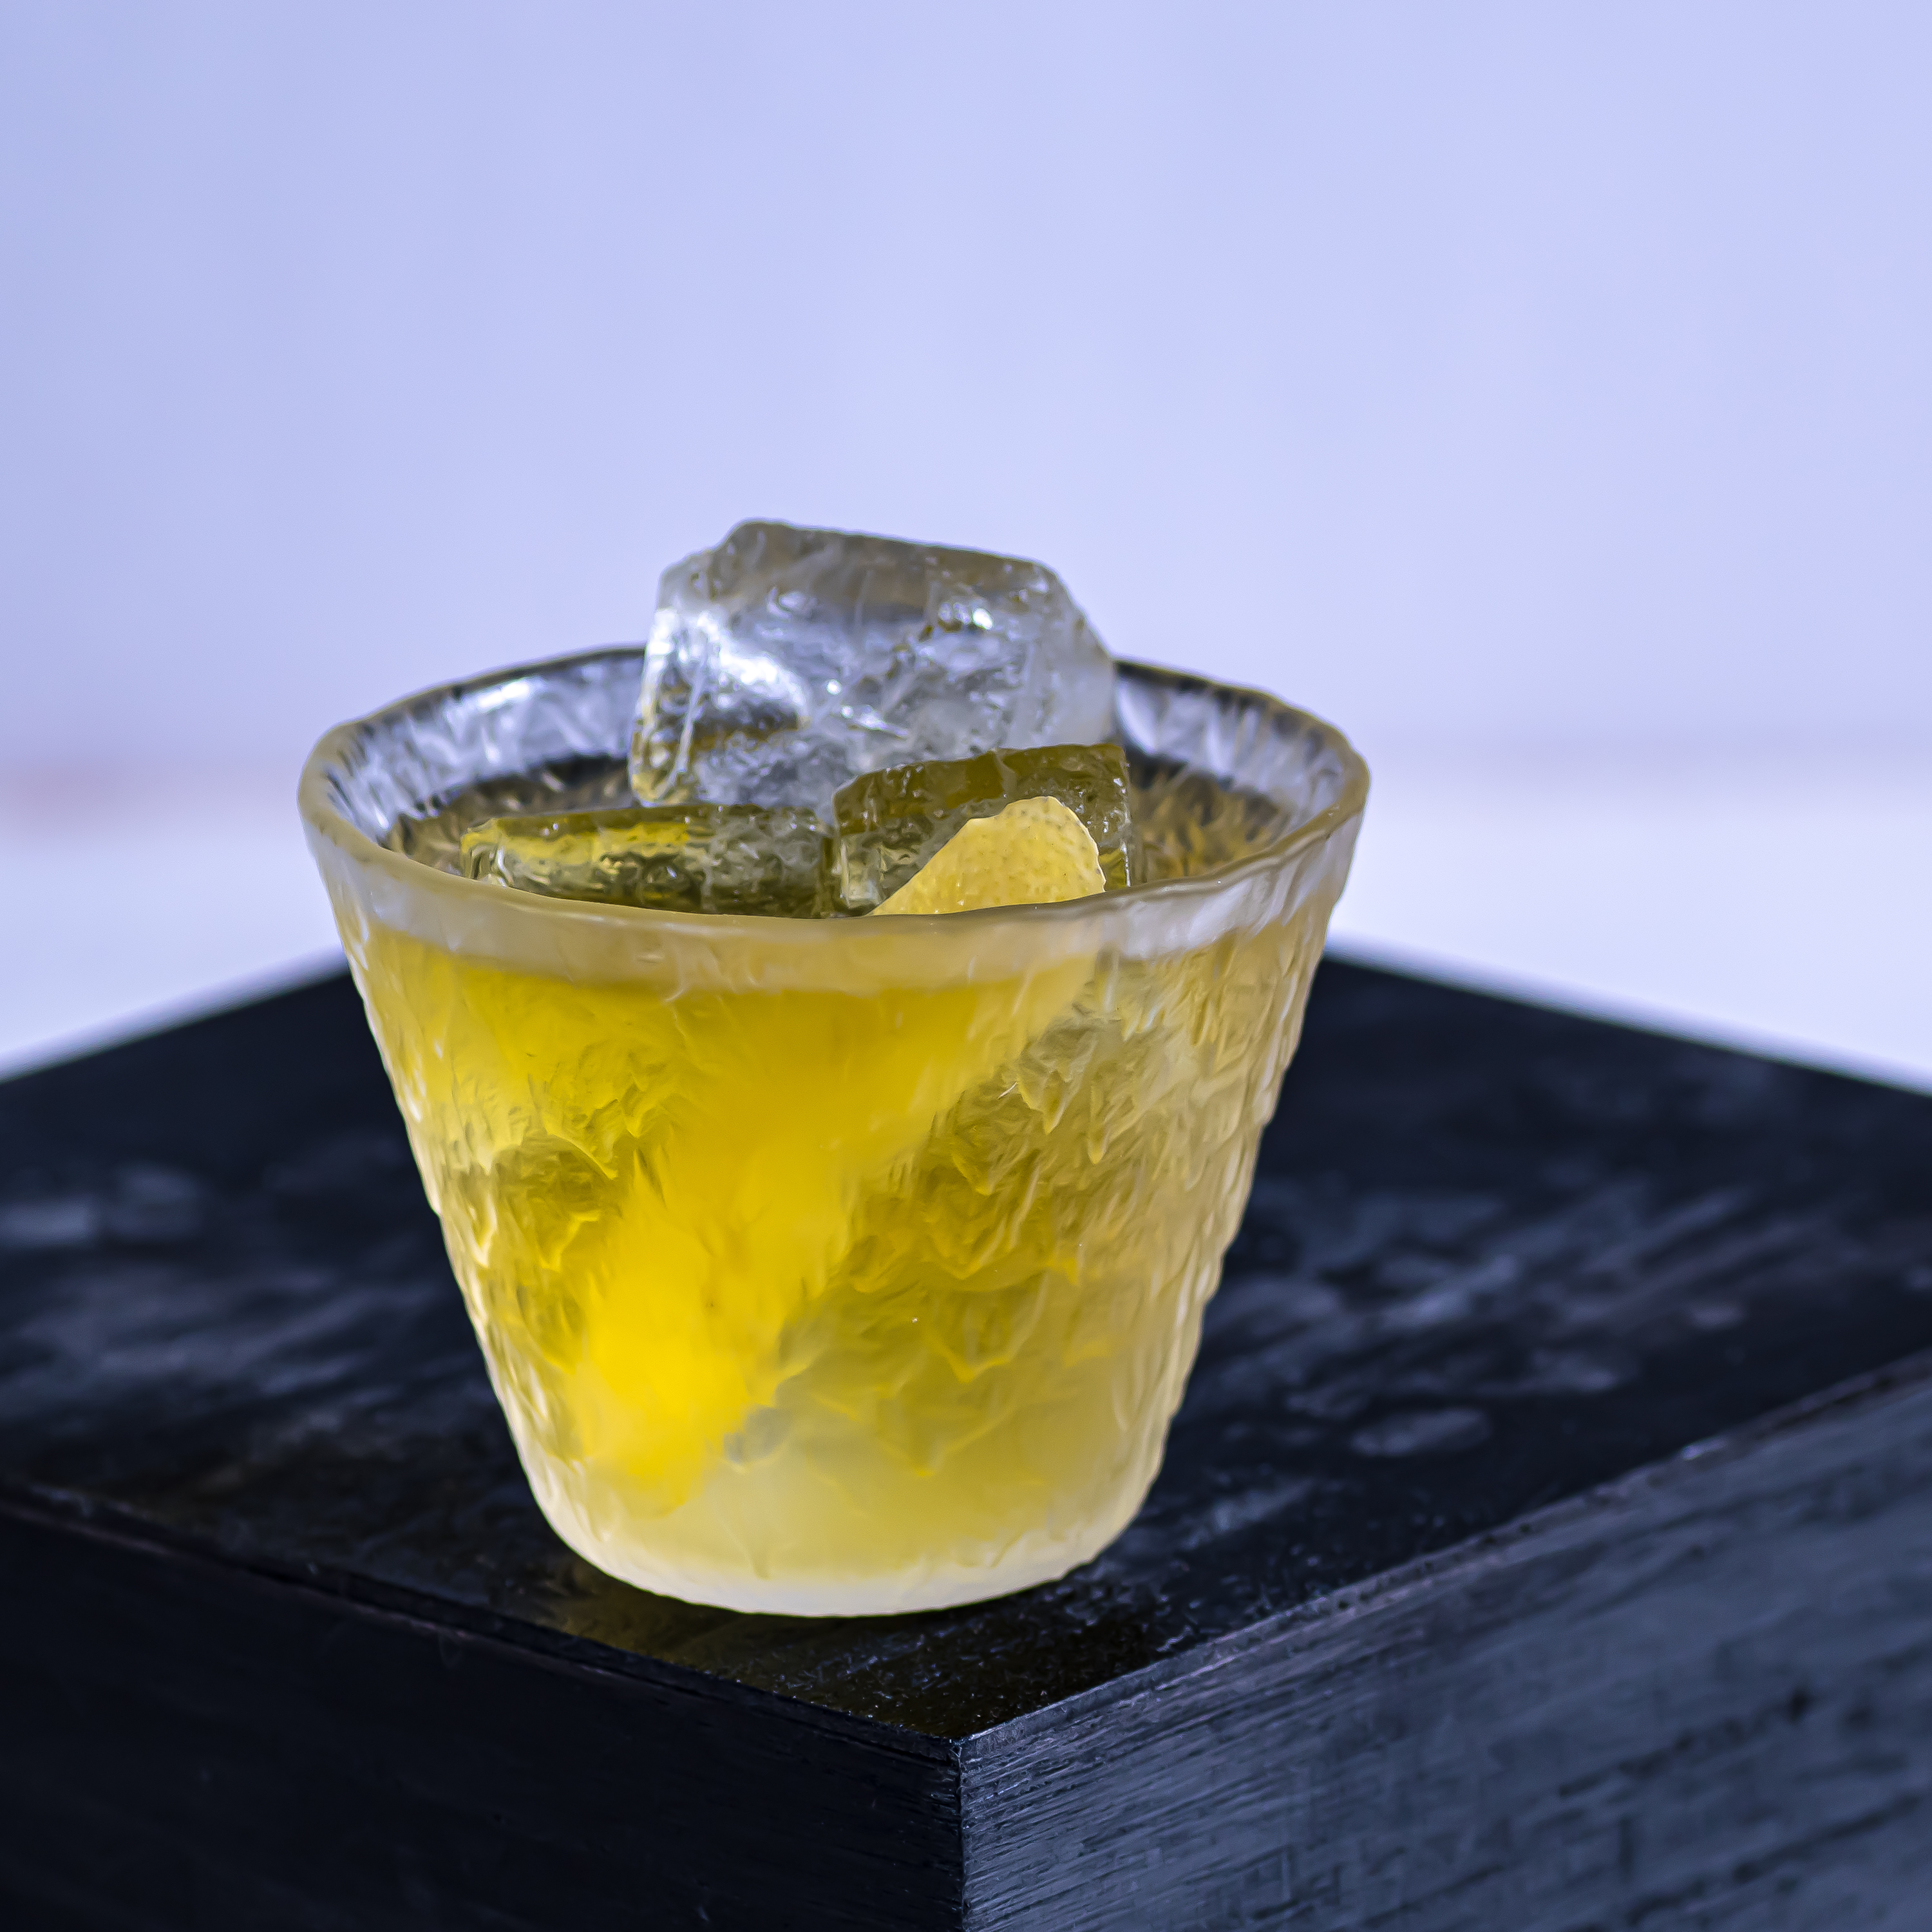 Le cocktail Dreadlock Holiday se compose de rhum jamaïcain, de Suze, de vermouth blanc et de liqueur d'ananas.